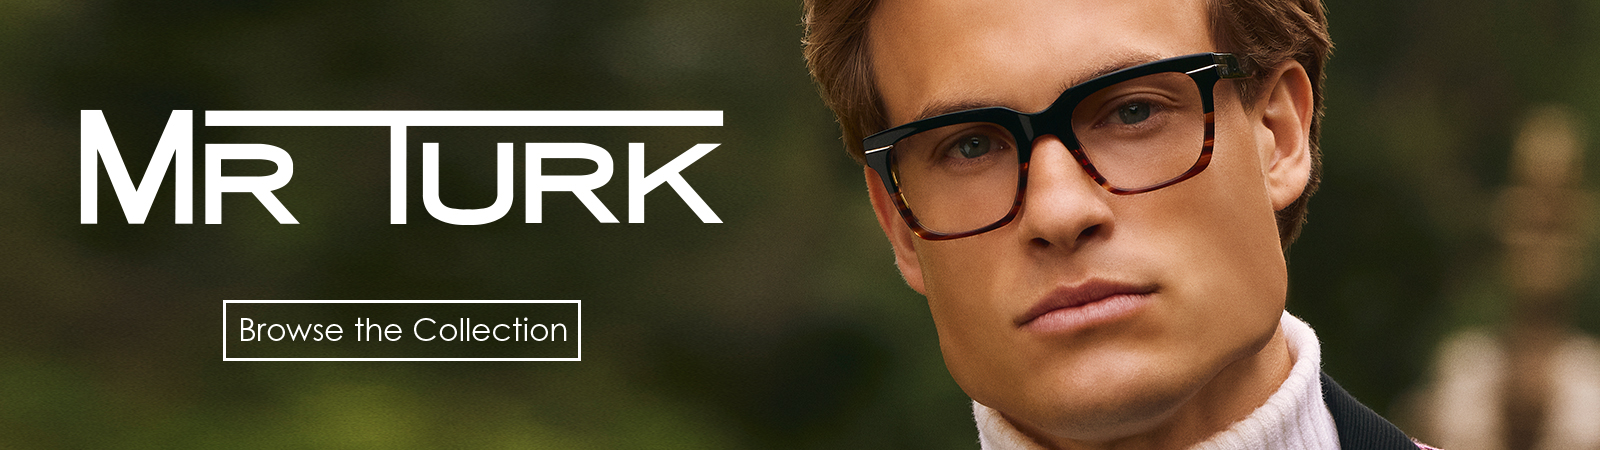 mr turk eyewear for men